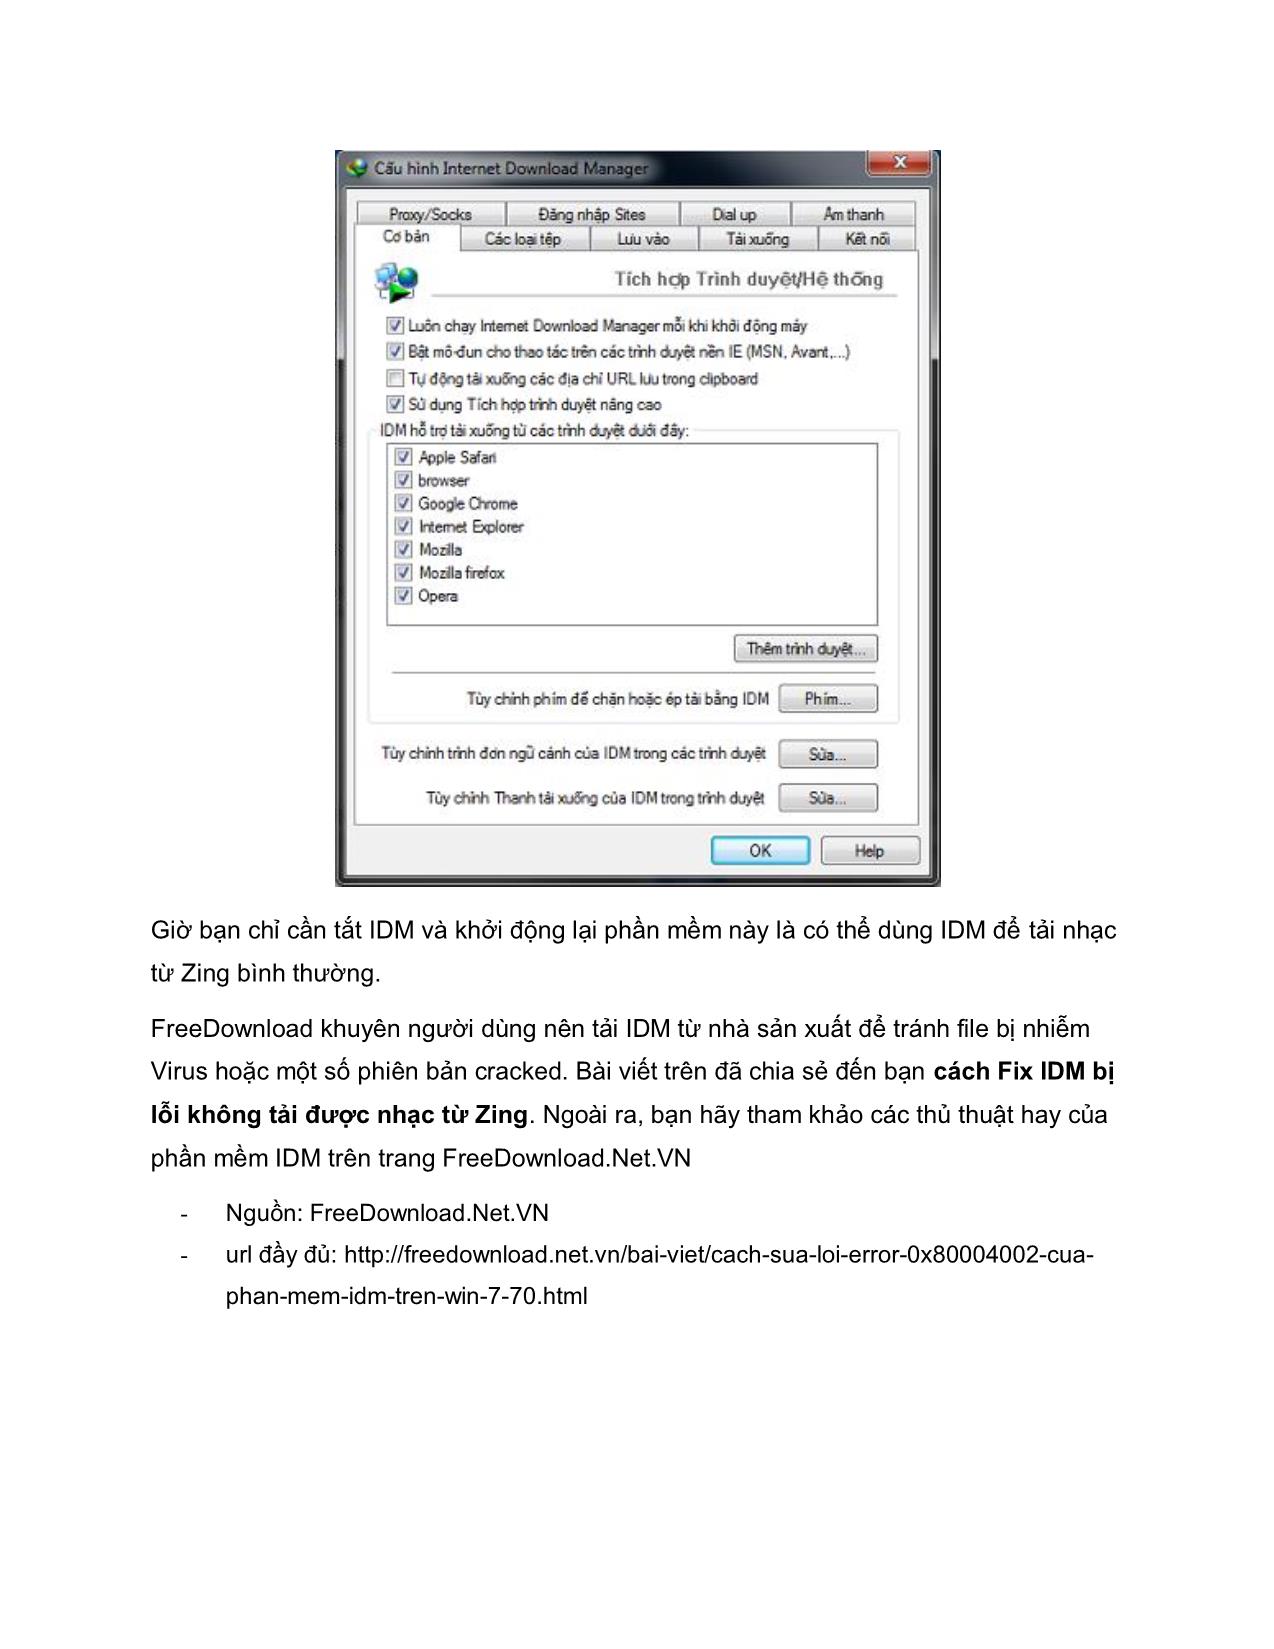 Tài liệu Cách sửa lỗi Error 0x80004002 của phần mềm IDM trên Win 7 trang 7